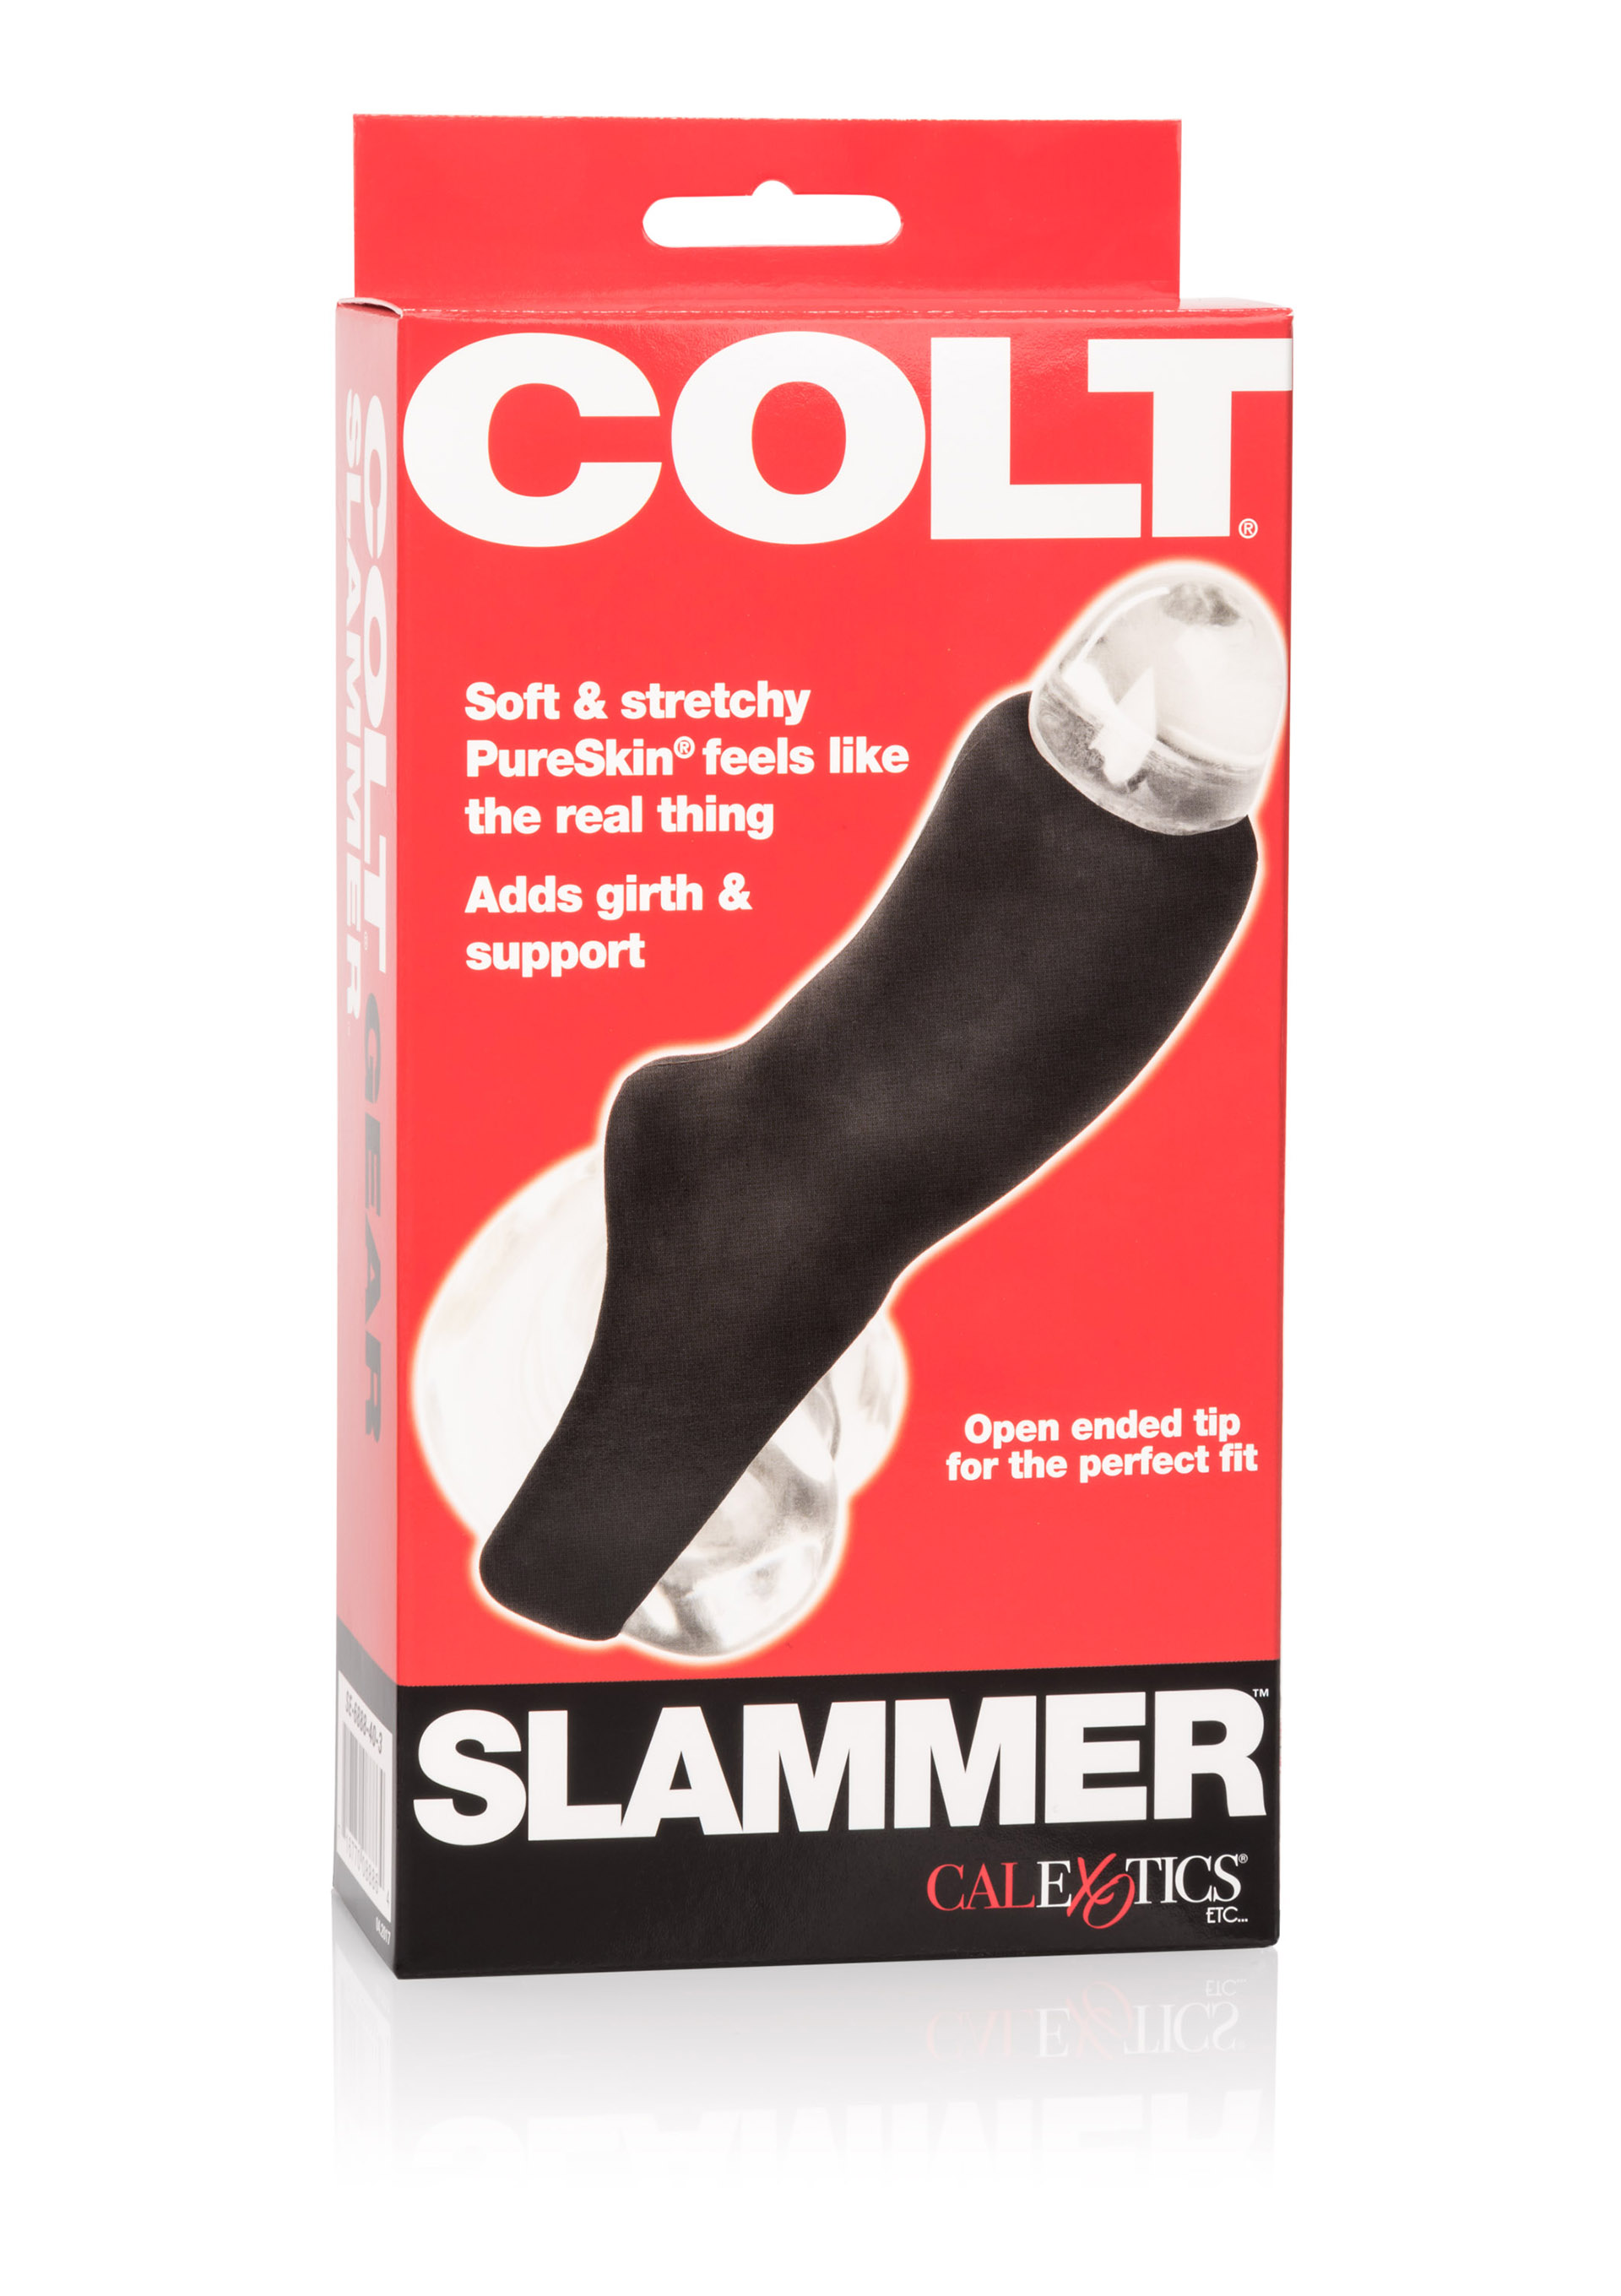 COLT Slammer.